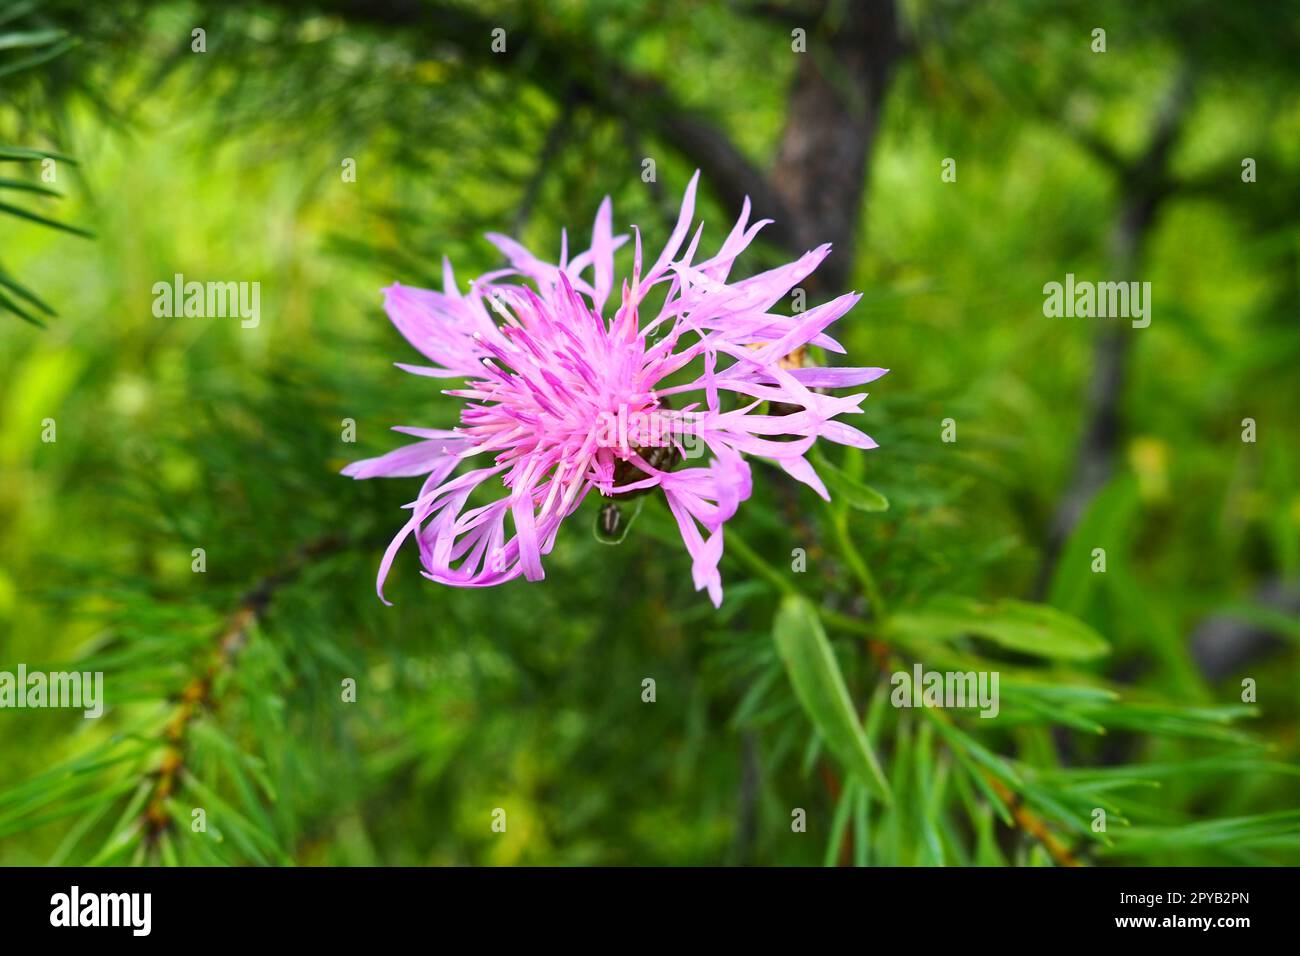 Le cornflower des prairies Centaurea jacea est une plante herbacée, une espèce du genre Cornflower de la famille des Asteraceae, ou Compositae. Pousse dans les prés et les bords de la forêt. Fleur violette élégante. Carélie Banque D'Images